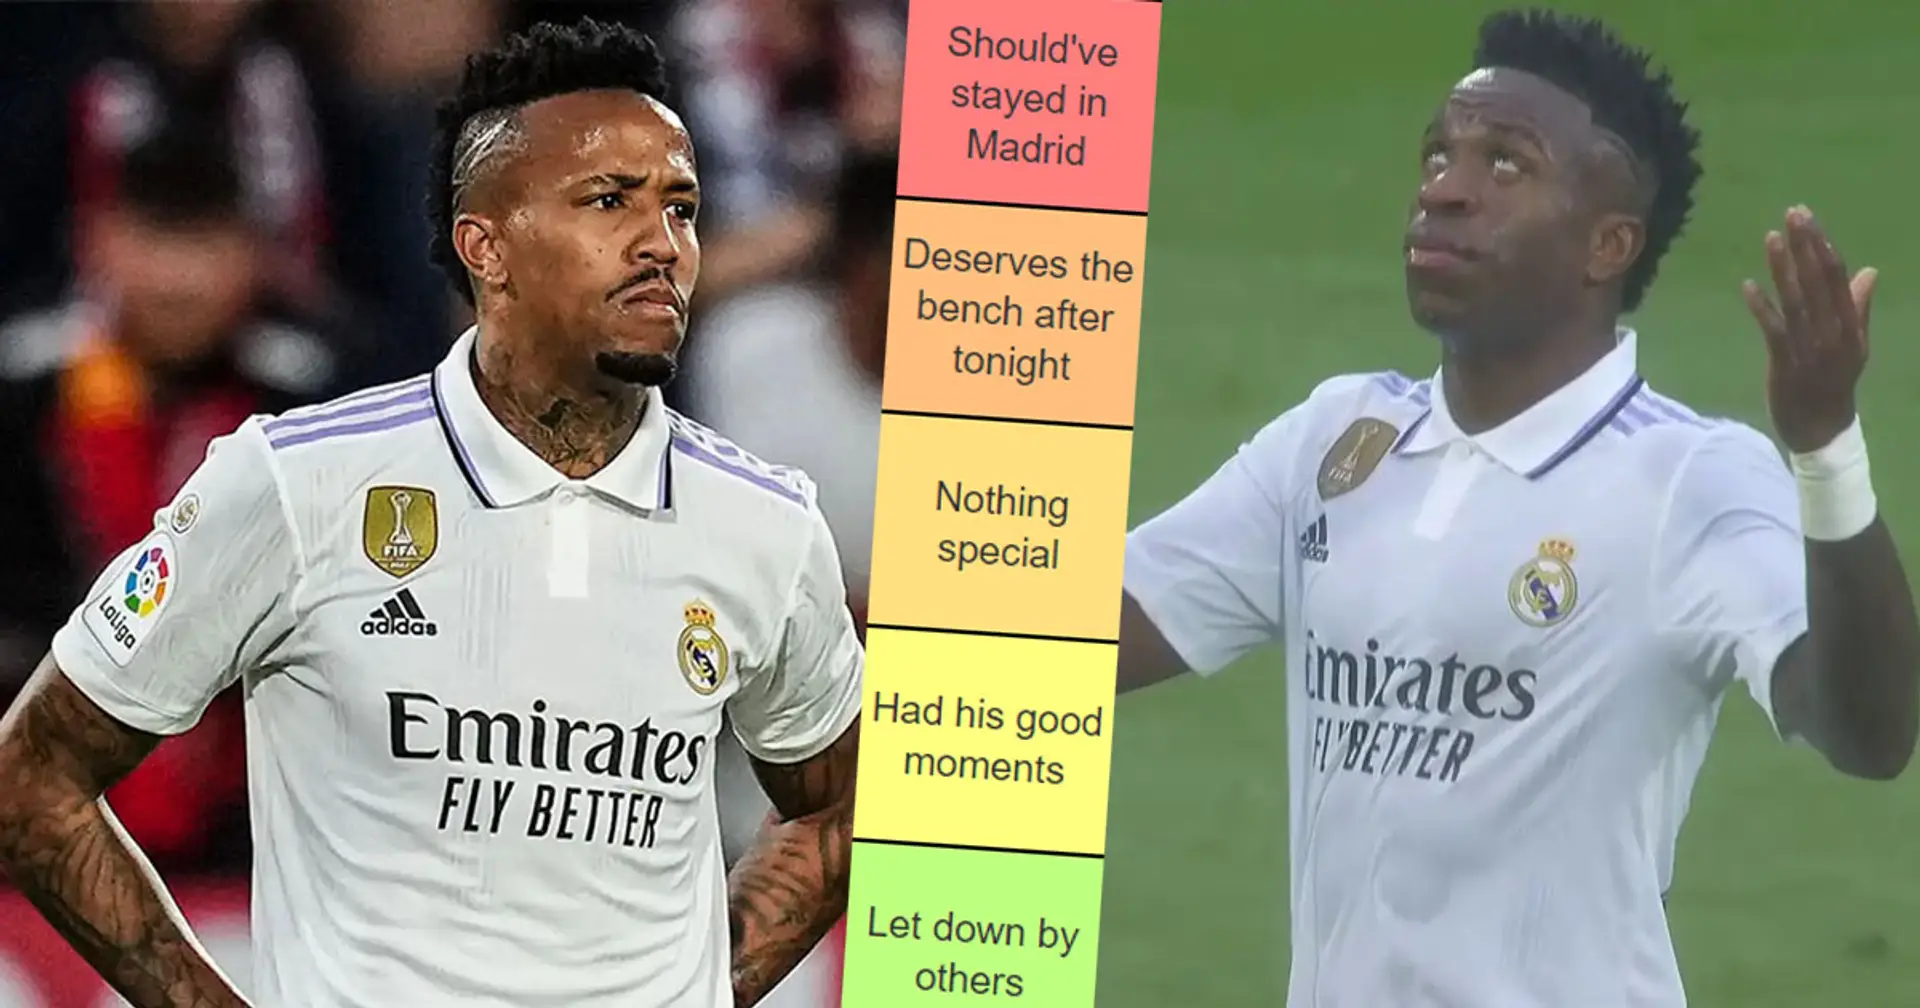 3 jugadores deberían haberse quedado en casa, uno decepcionado por el resto del equipo: tierlist de rendimiento de jugadores del Madrid vs Girona